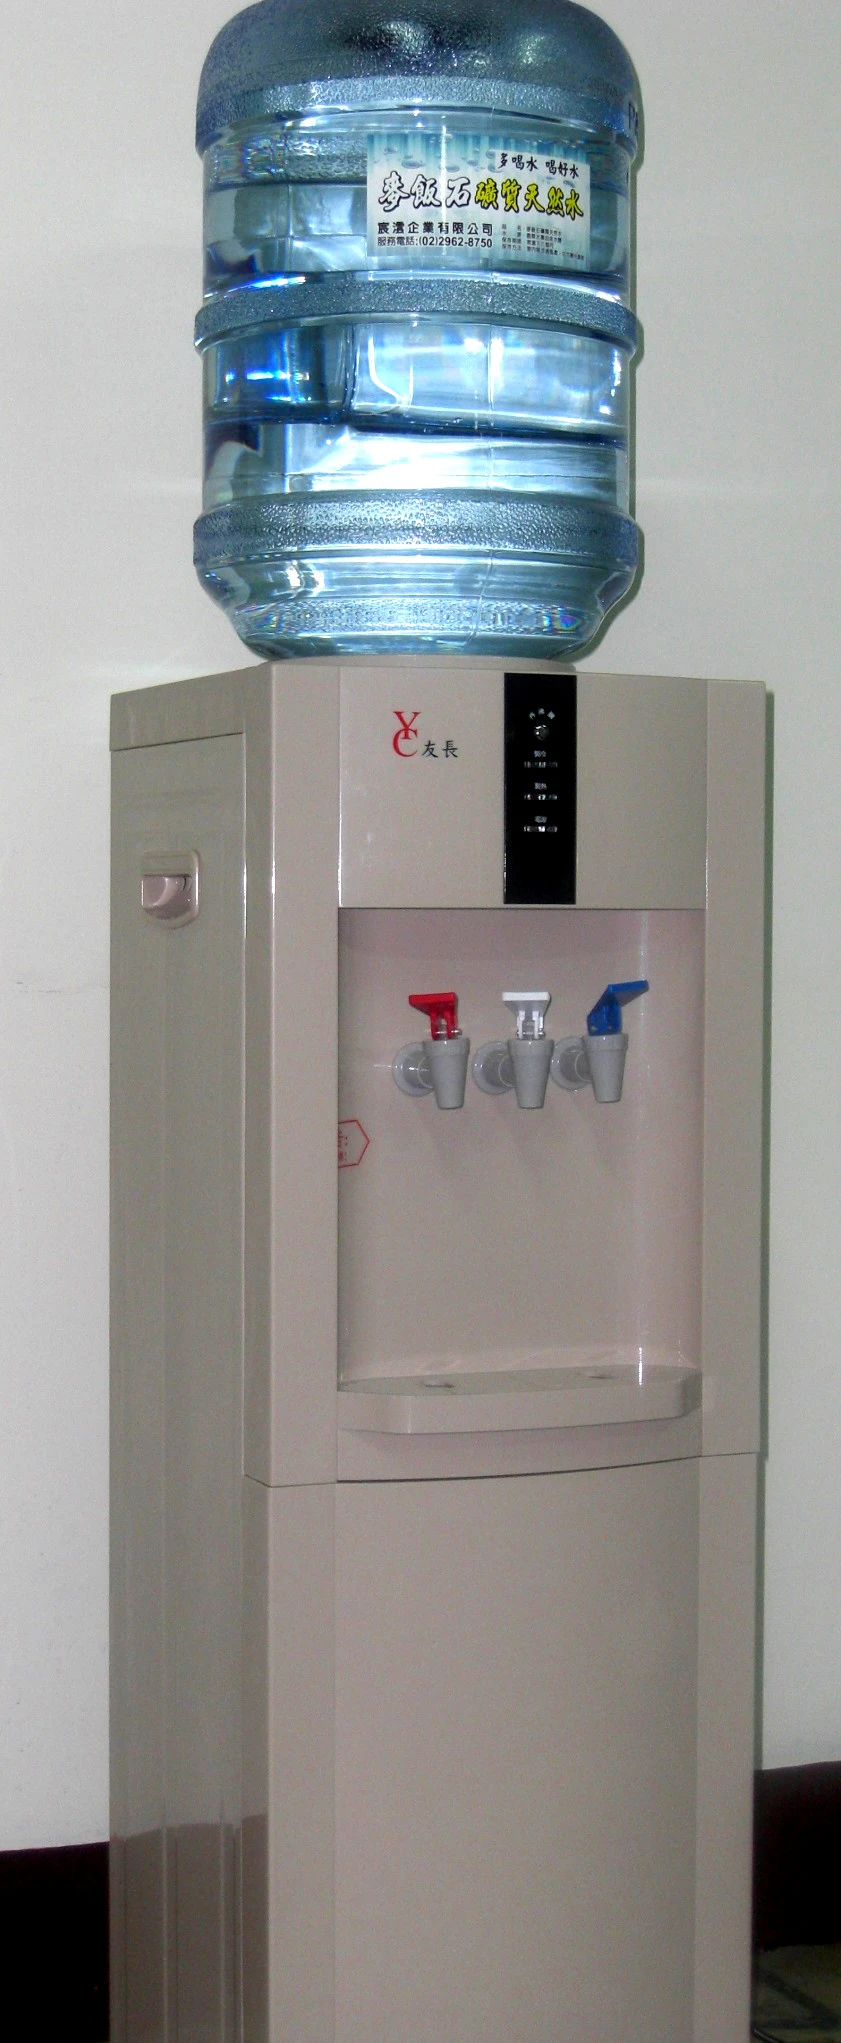 桶裝水,鹼性麥飯石礦質水,過濾器,濾水器,飲水機